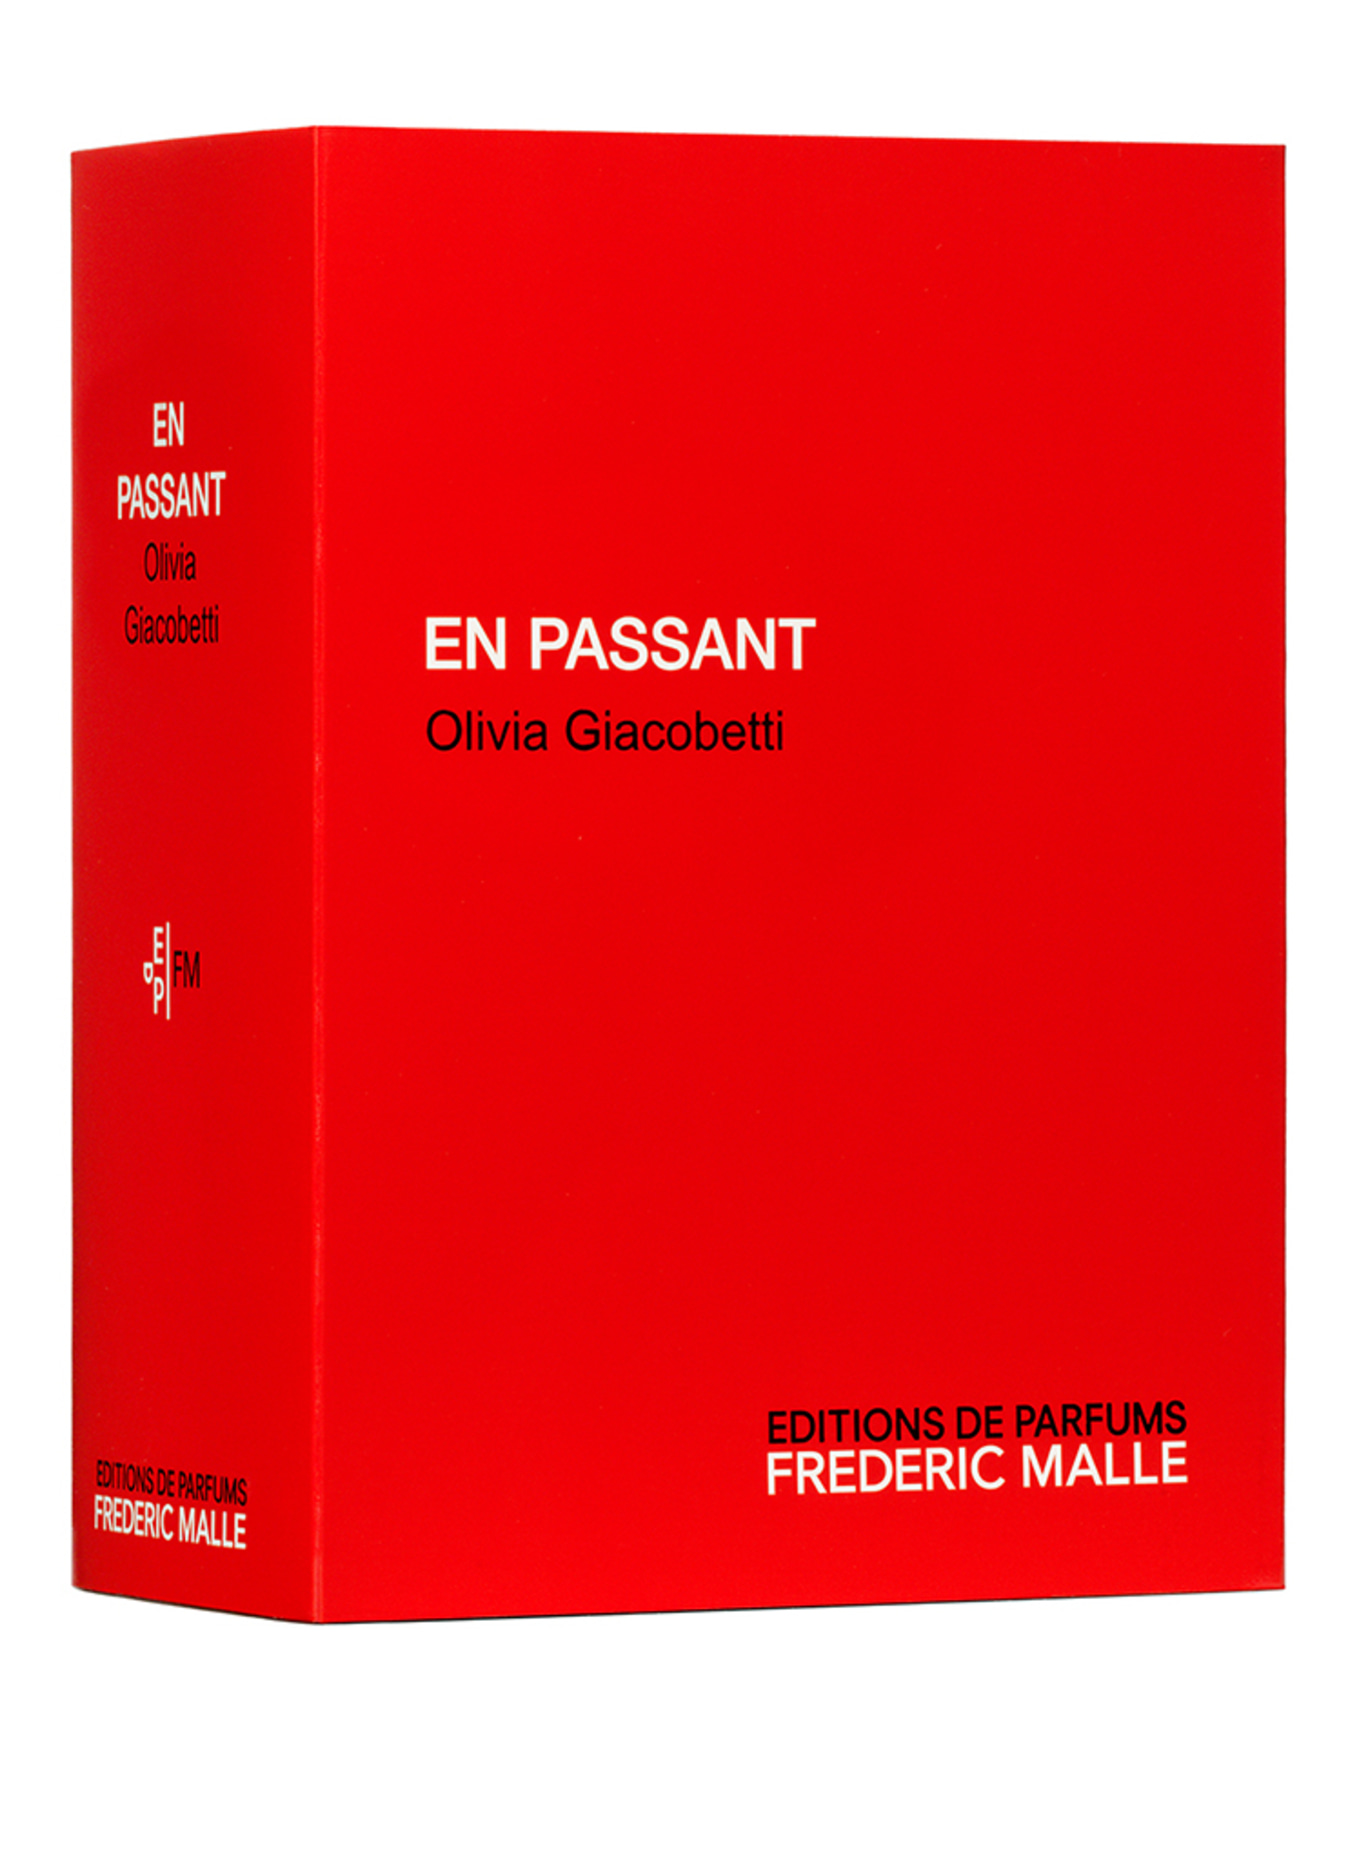 EDITIONS DE PARFUMS FREDERIC MALLE EN PASSANT (Obrázek 2)